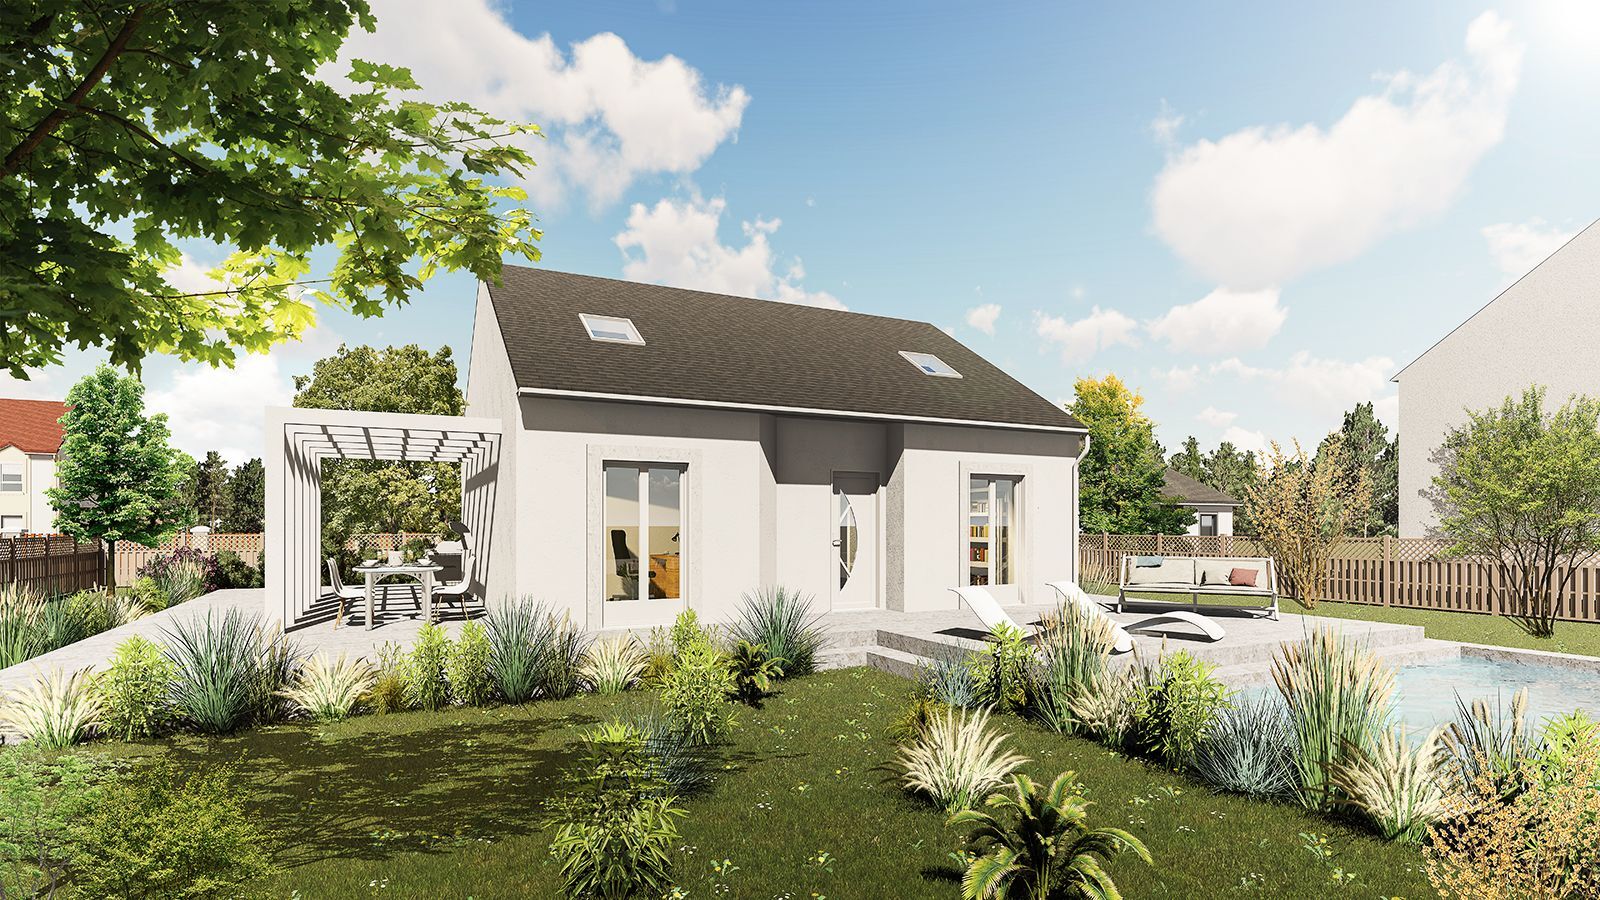 Vente Maison neuve 100 m² à Boutigny-Prouais 217 907 €